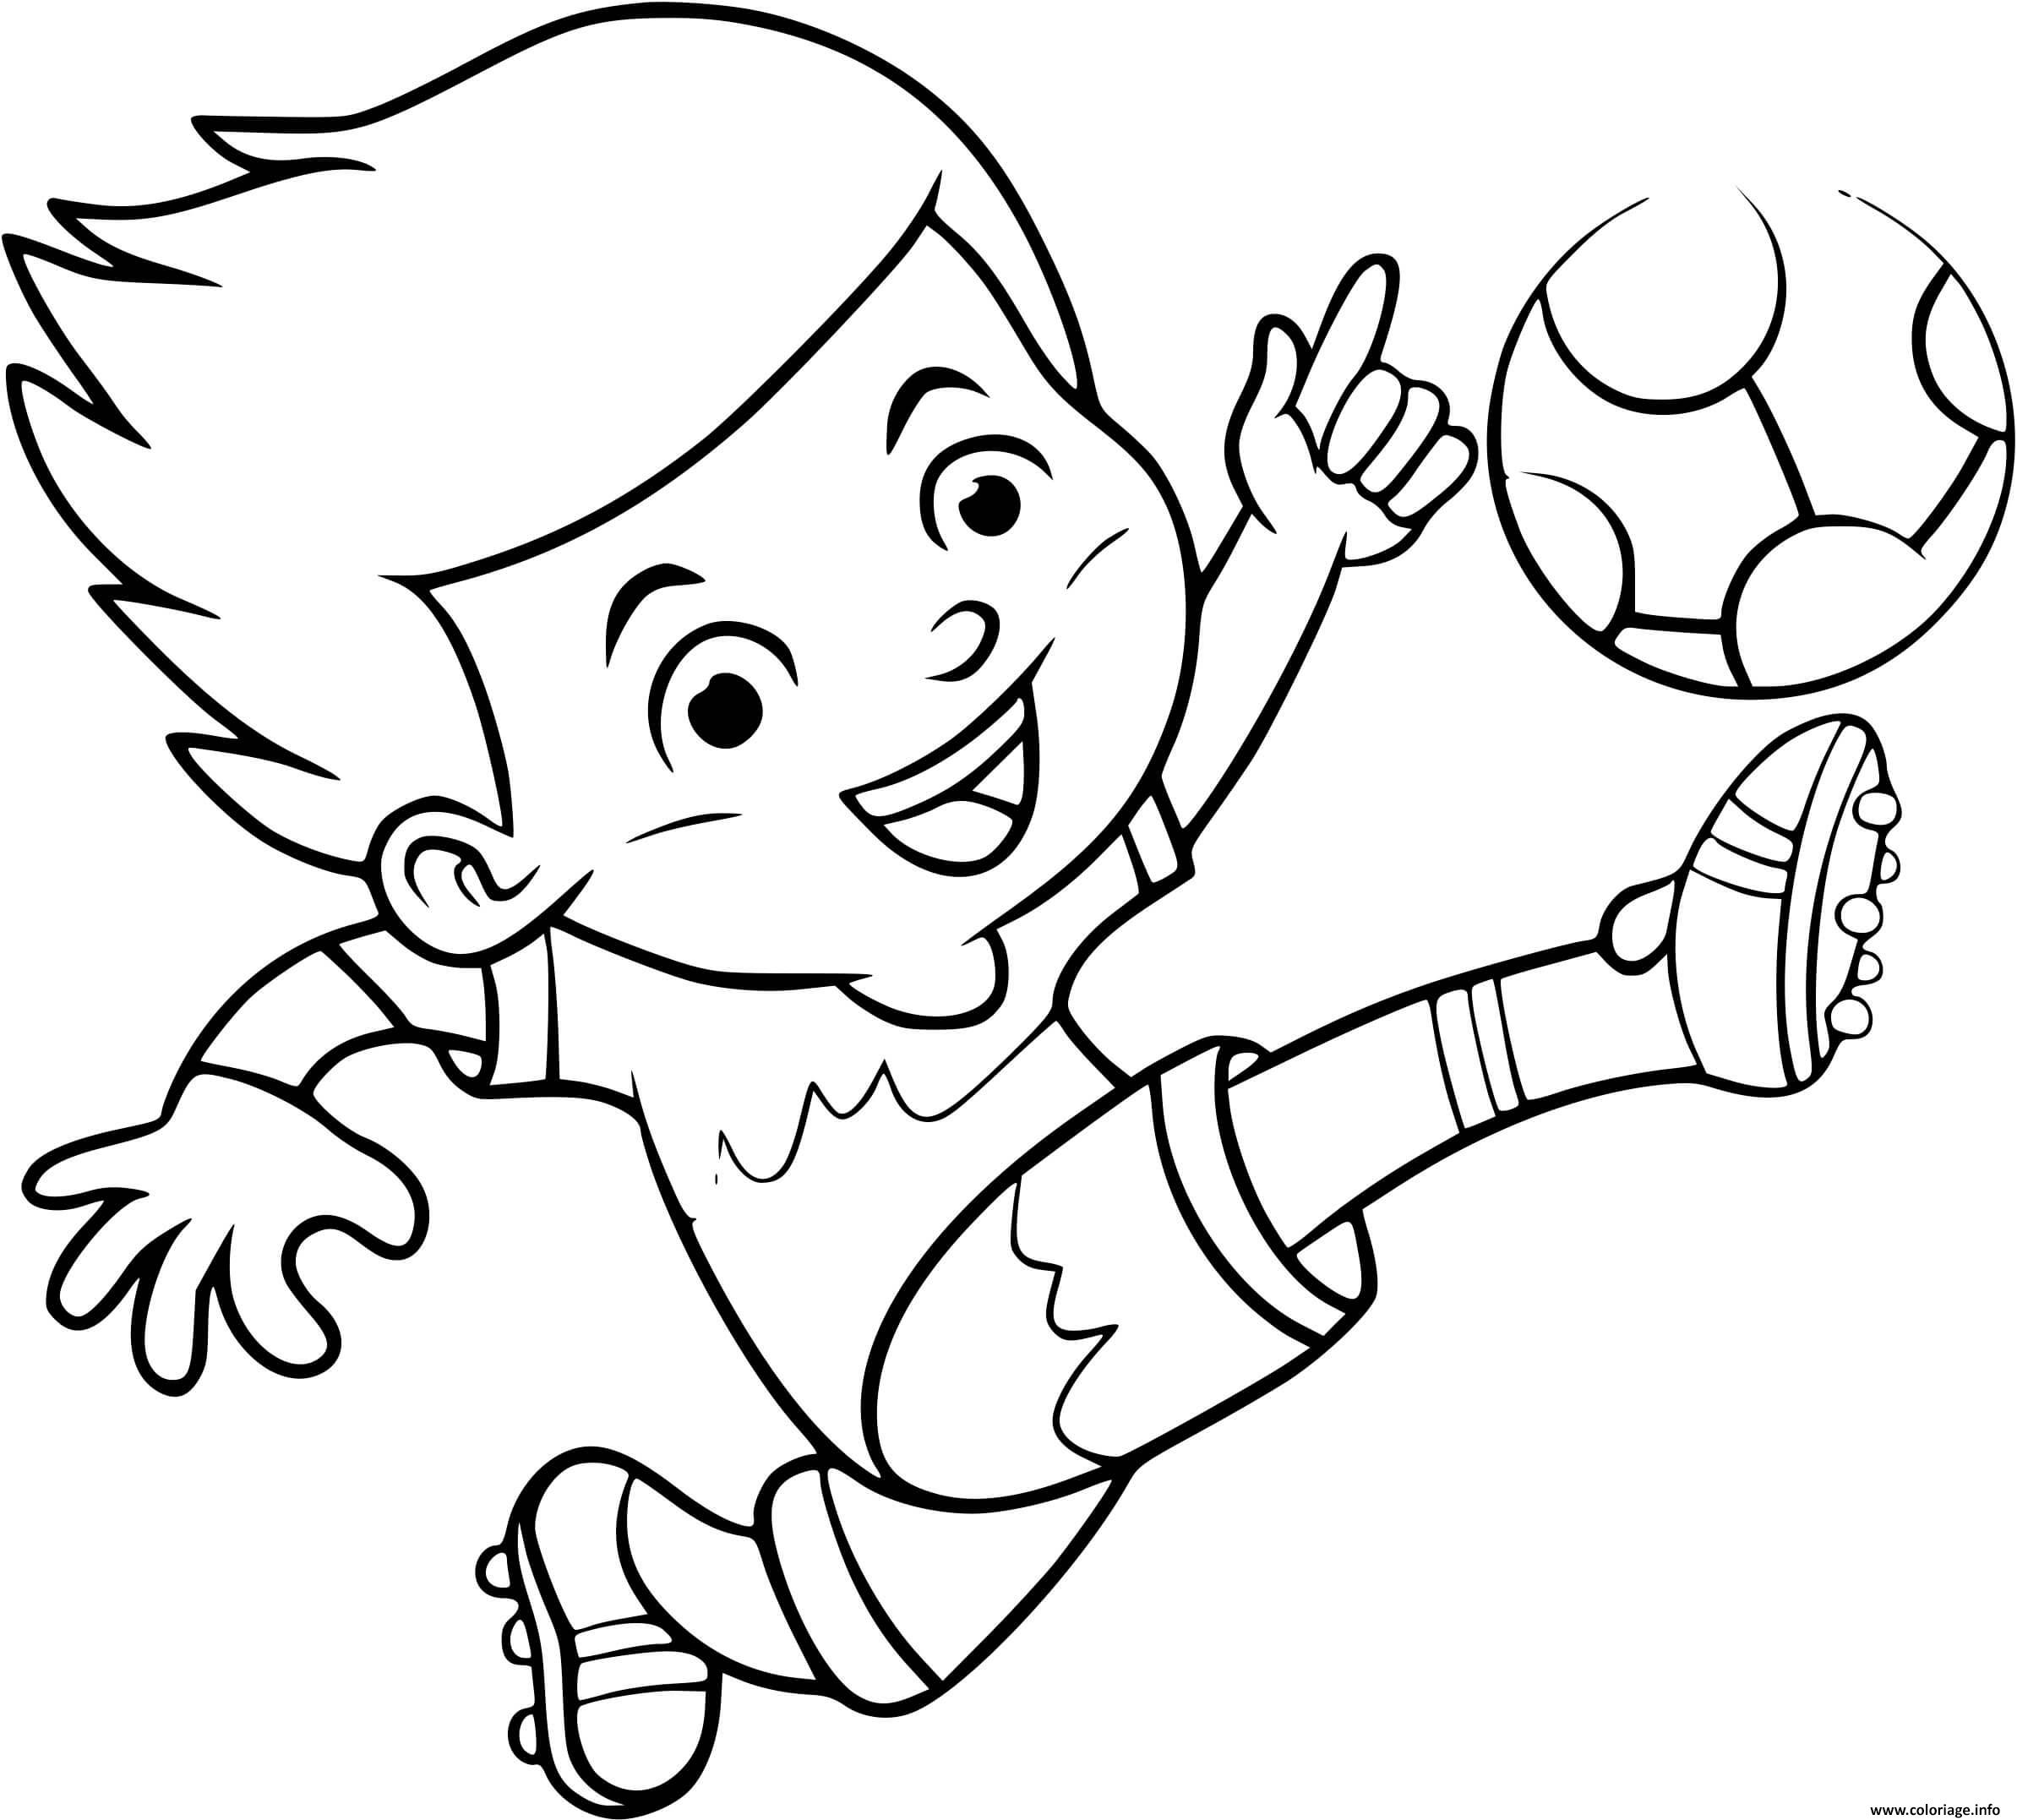 Dessin un enfant joue au foot pour devenir joueur professionnel Coloriage Gratuit à Imprimer